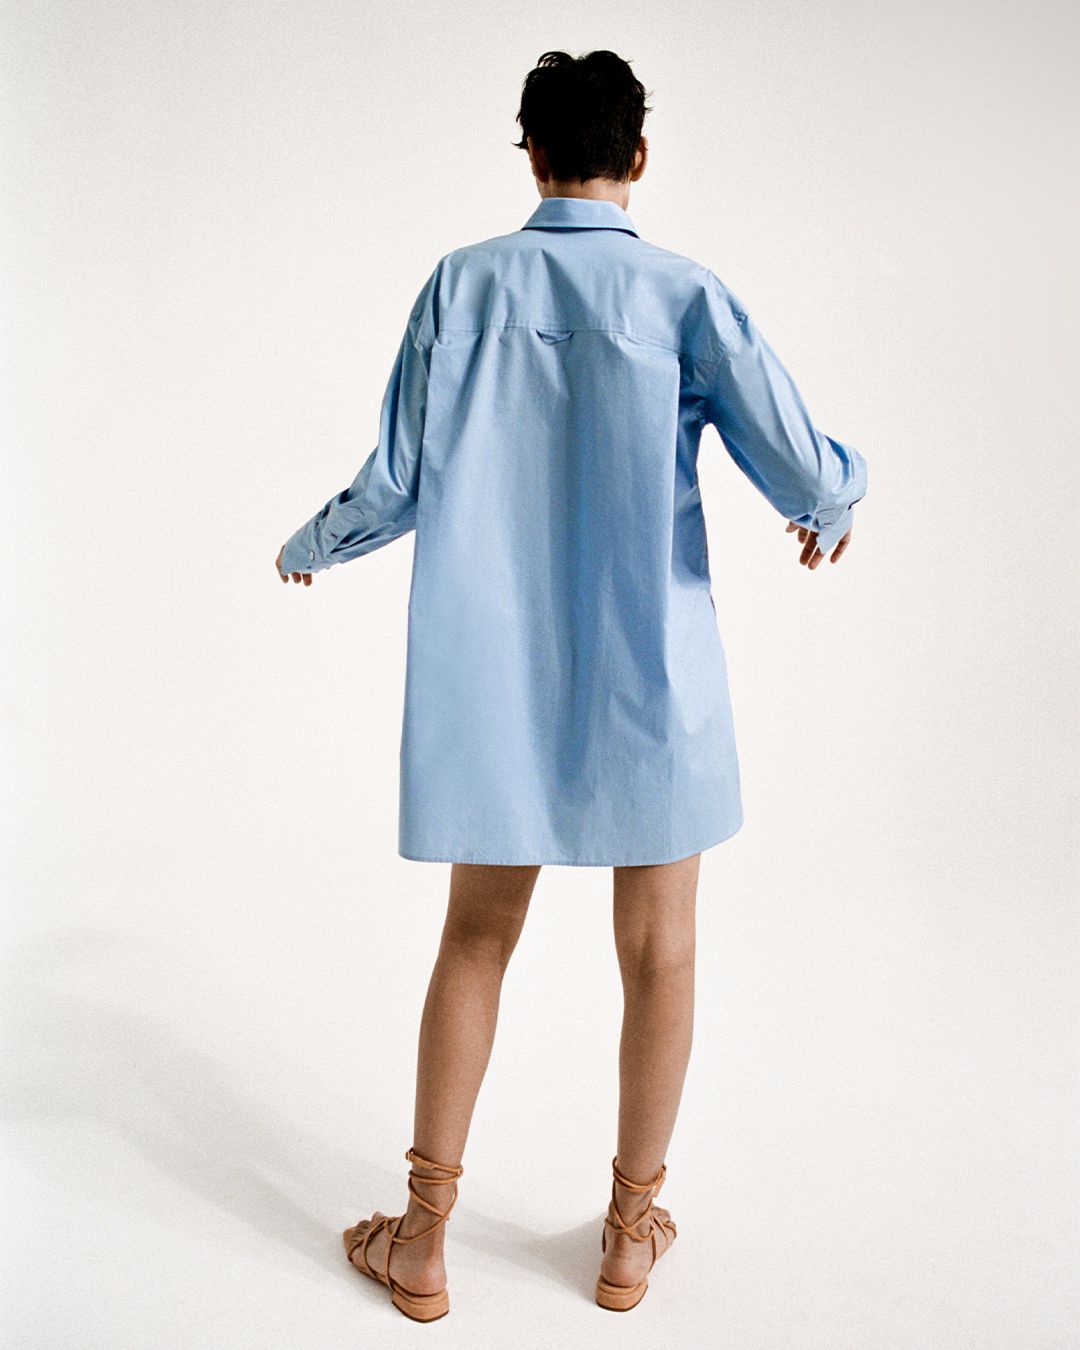 Zinnia Kumar standing facing away in a blue cotton shirt